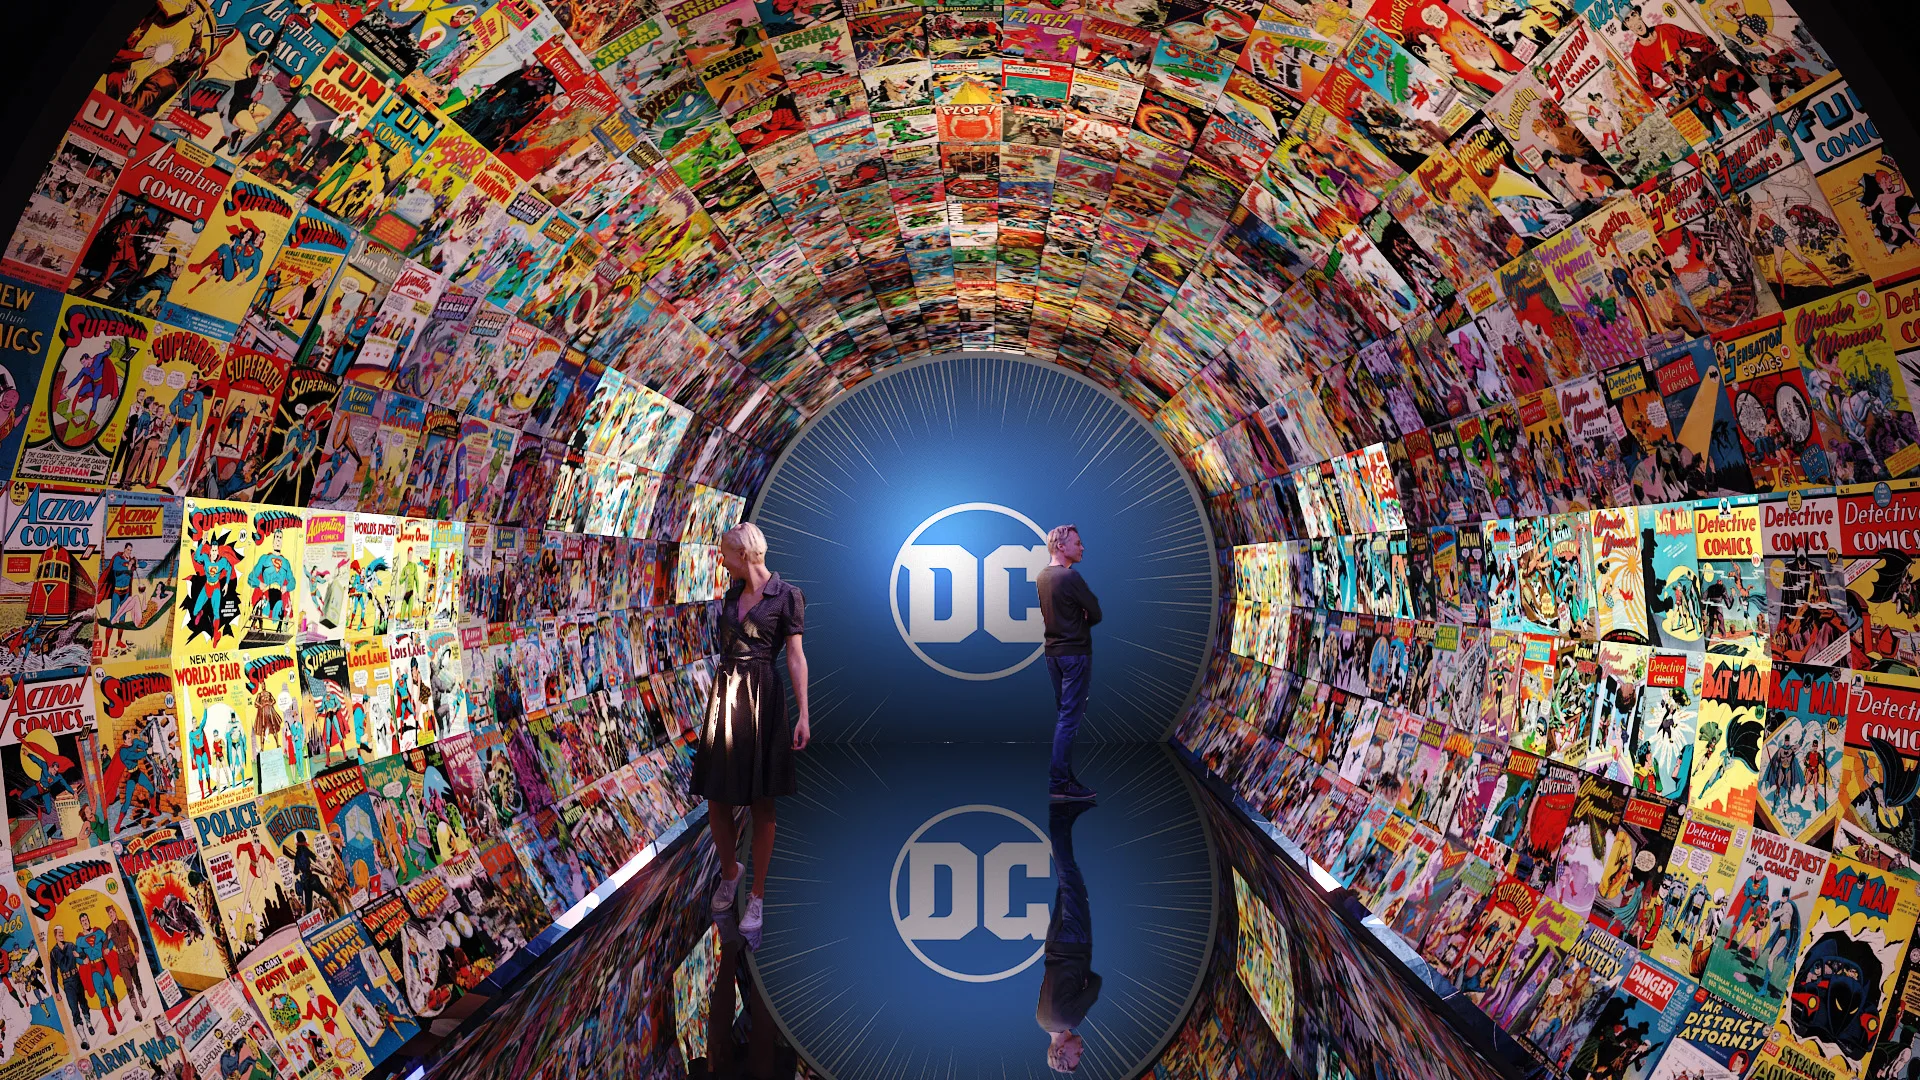 Exposição "Heróis DC", com itens originais, chega a São Paulo